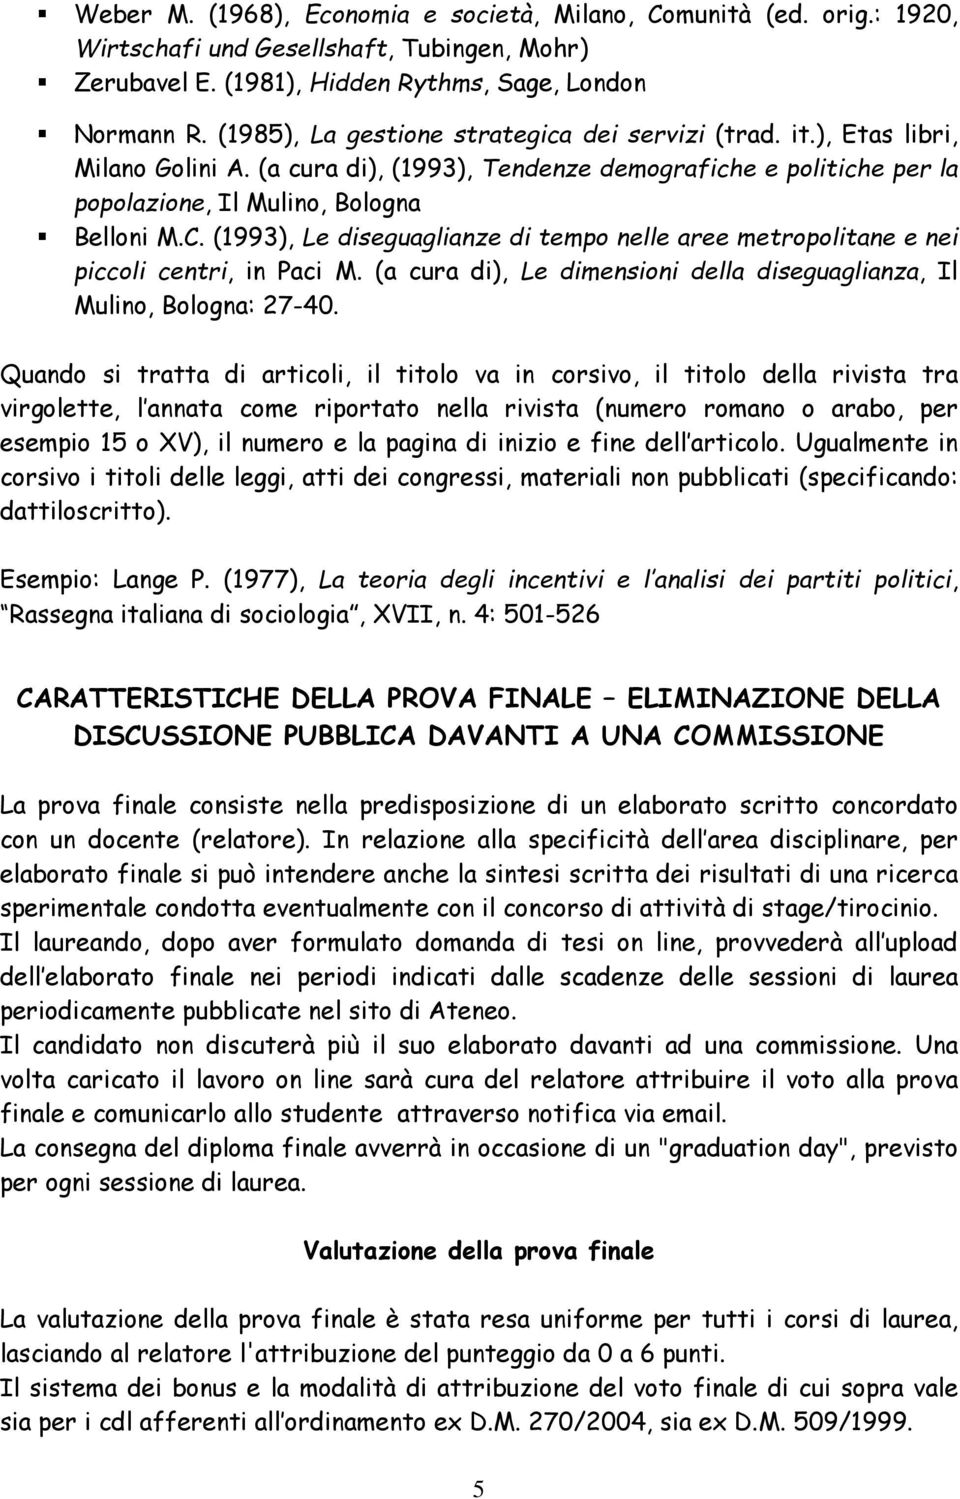 (1993), Le diseguaglianze di tempo nelle aree metropolitane e nei piccoli centri, in Paci M. (a cura di), Le dimensioni della diseguaglianza, Il Mulino, Bologna: 27-40.